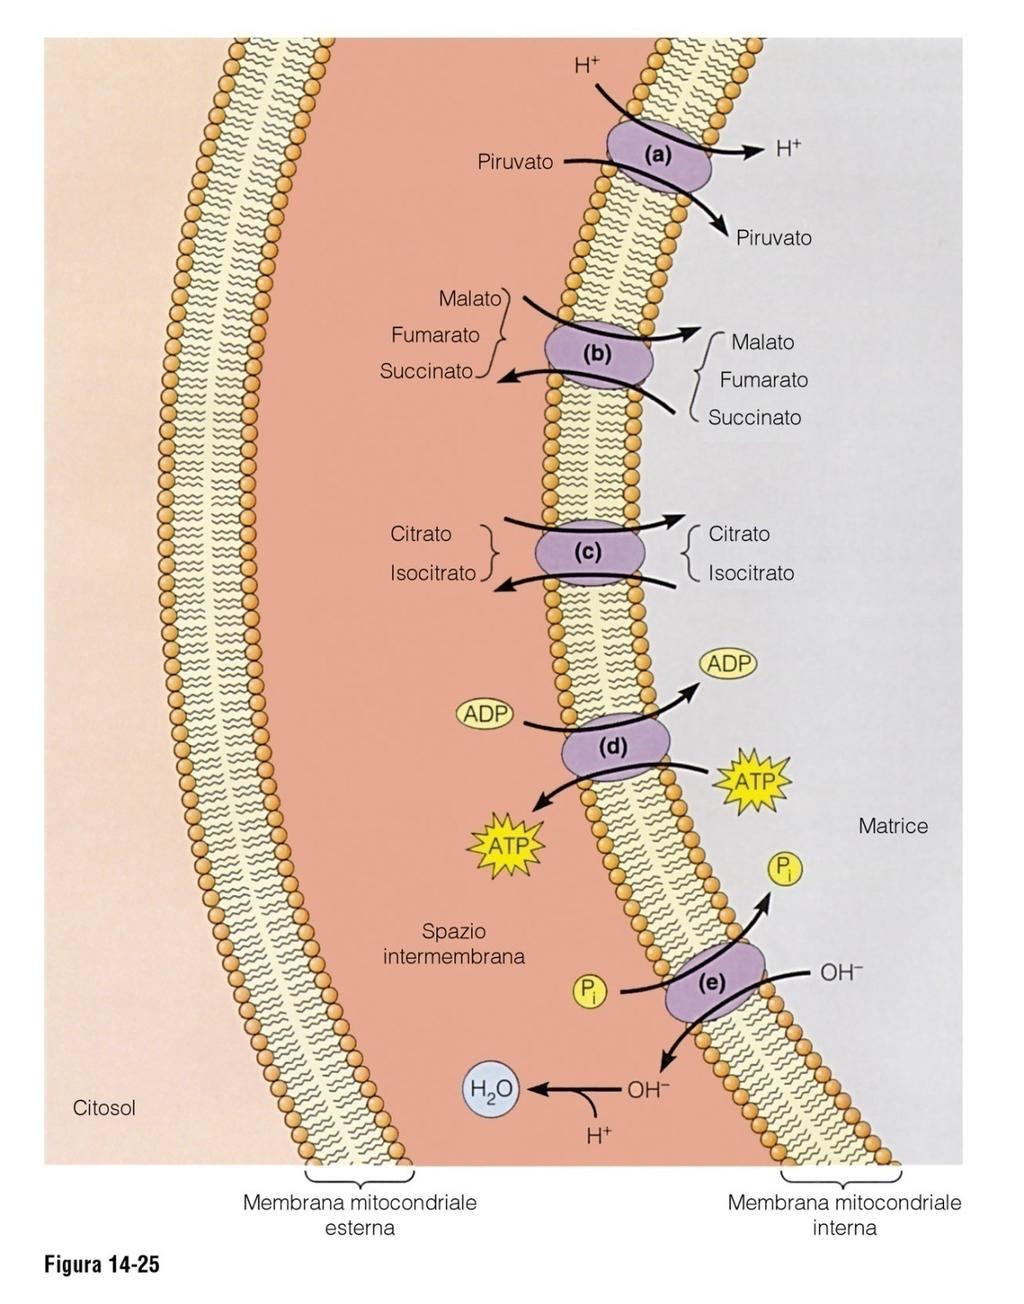 La membrana mt interna ha vari sistemi di trasporto per molecole necessarie ad espletare fosforilazione ossidativa Principali sistemi di trasporto nella membrana